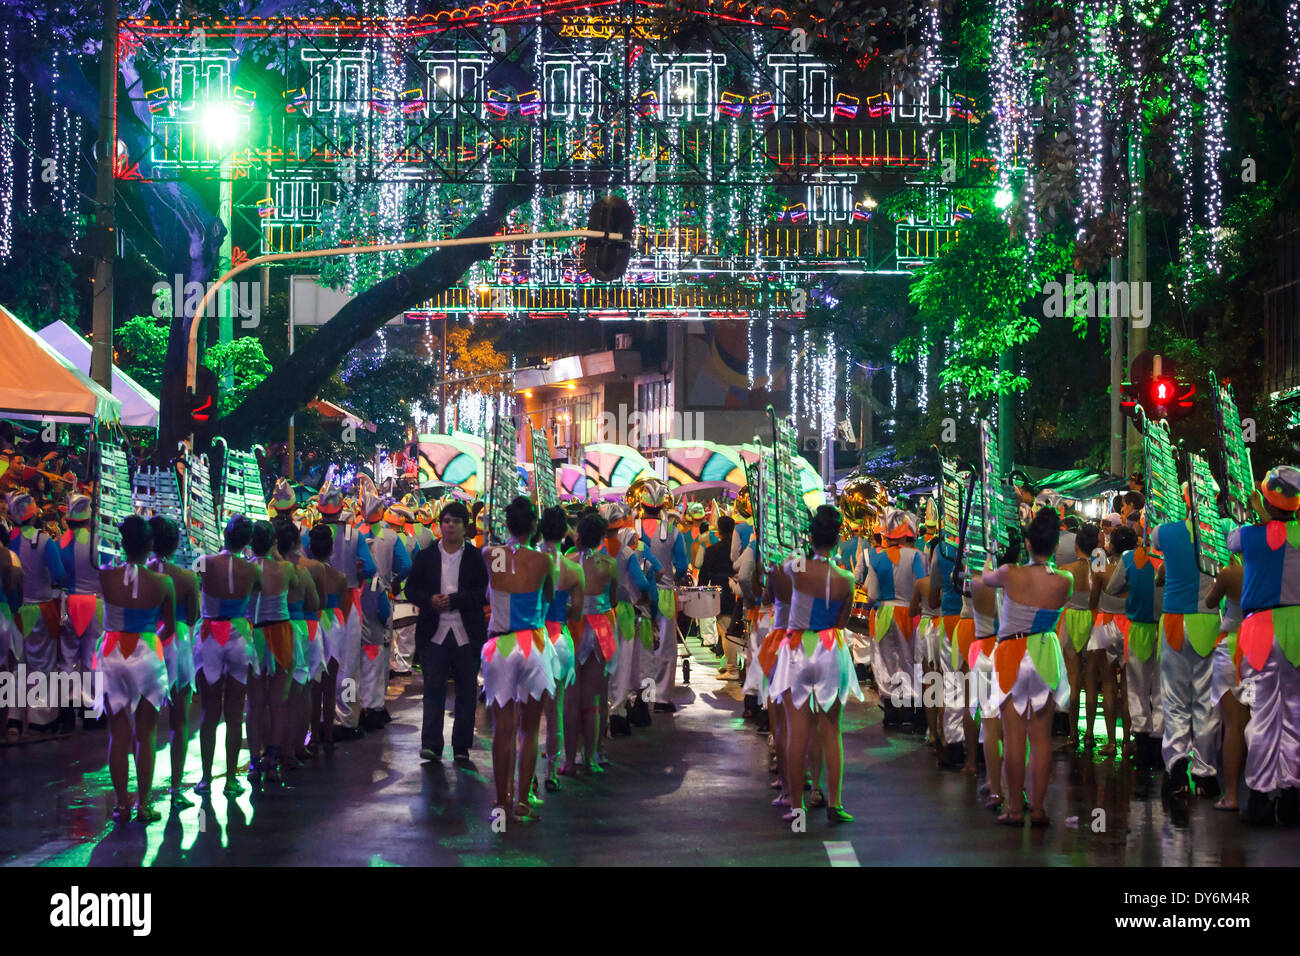 Luces de carnaval, bailes, mitos y leyendas. Foto de stock